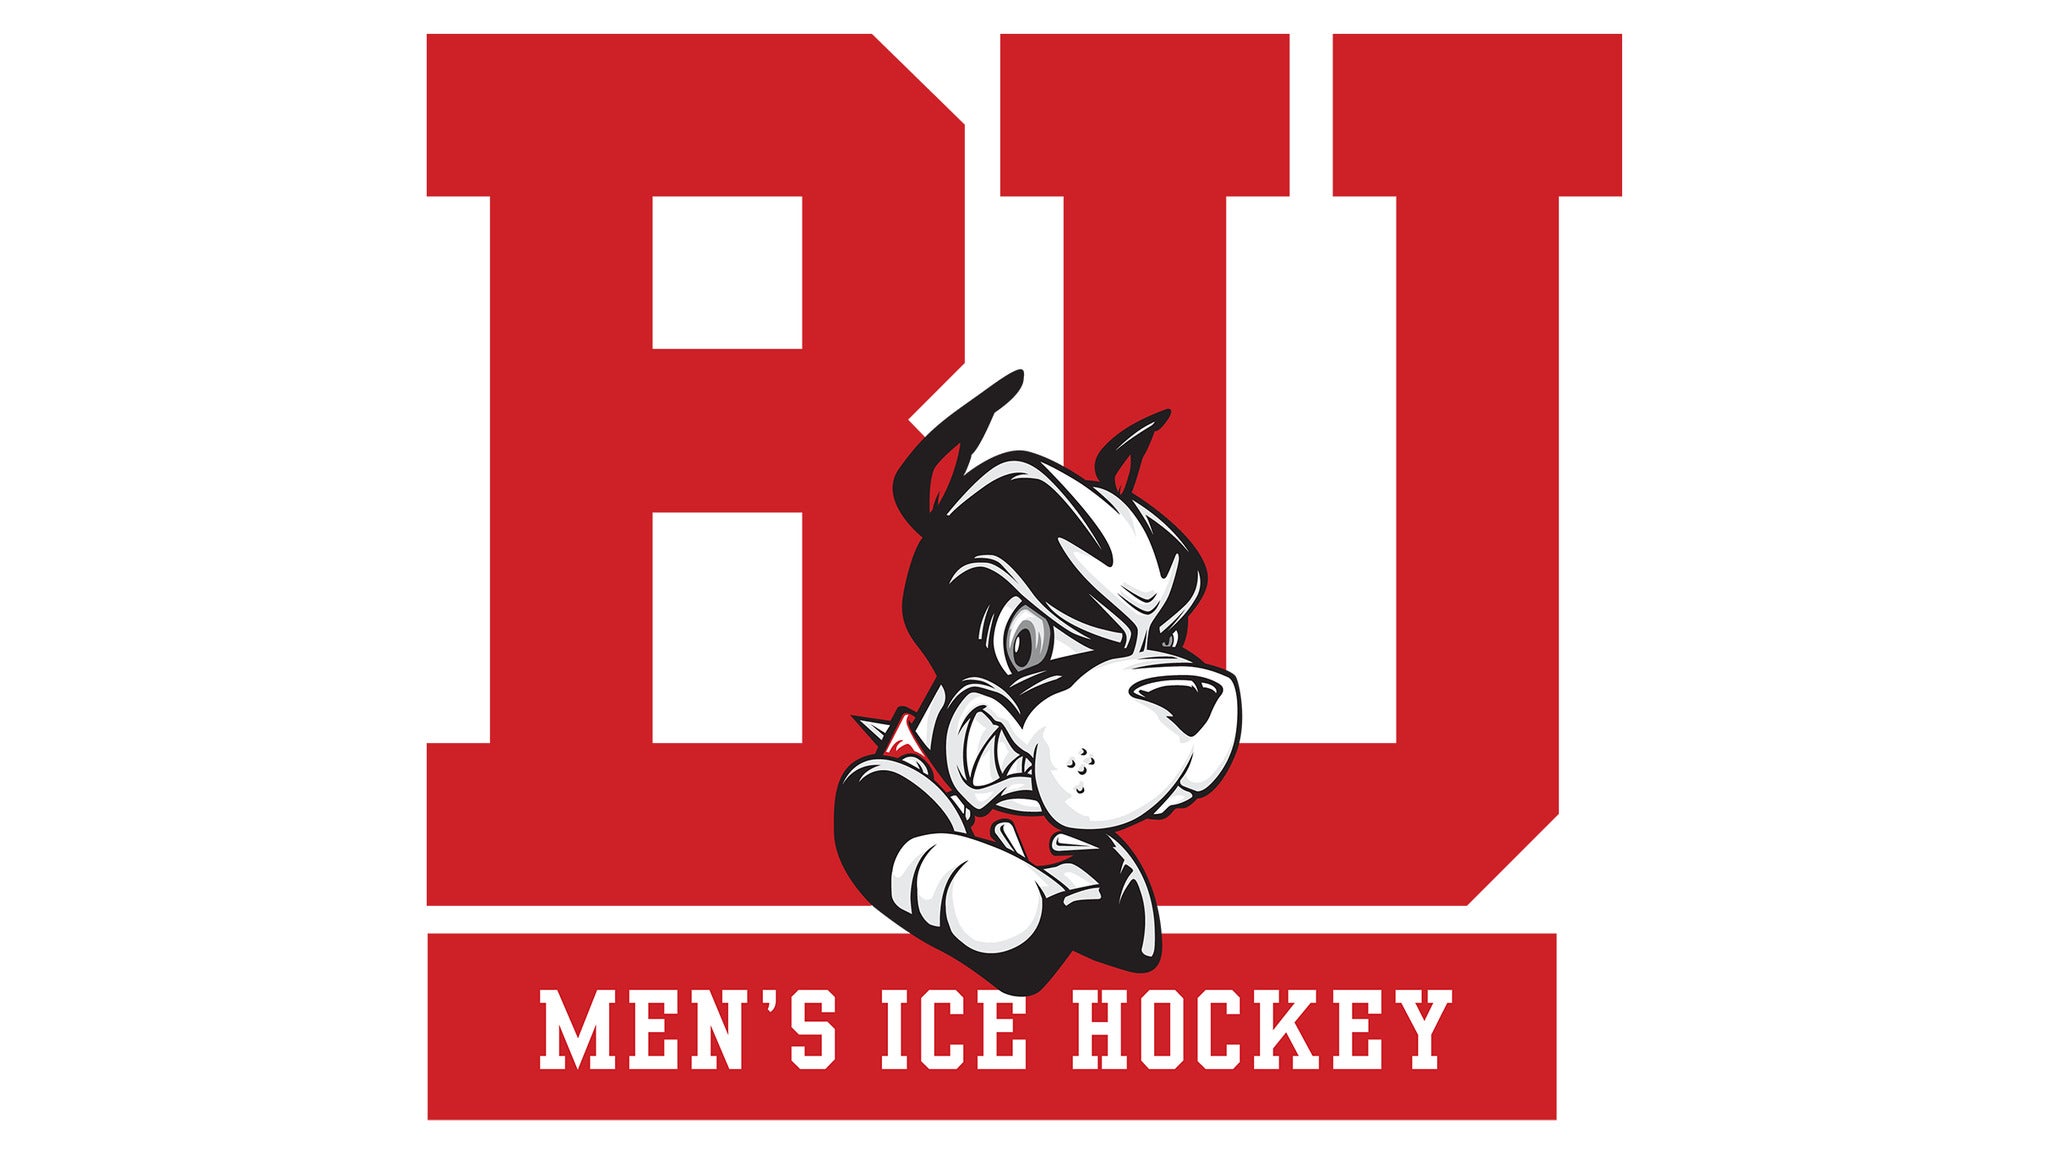 Boston University Men's Hockey vs. UMass in Boston event information